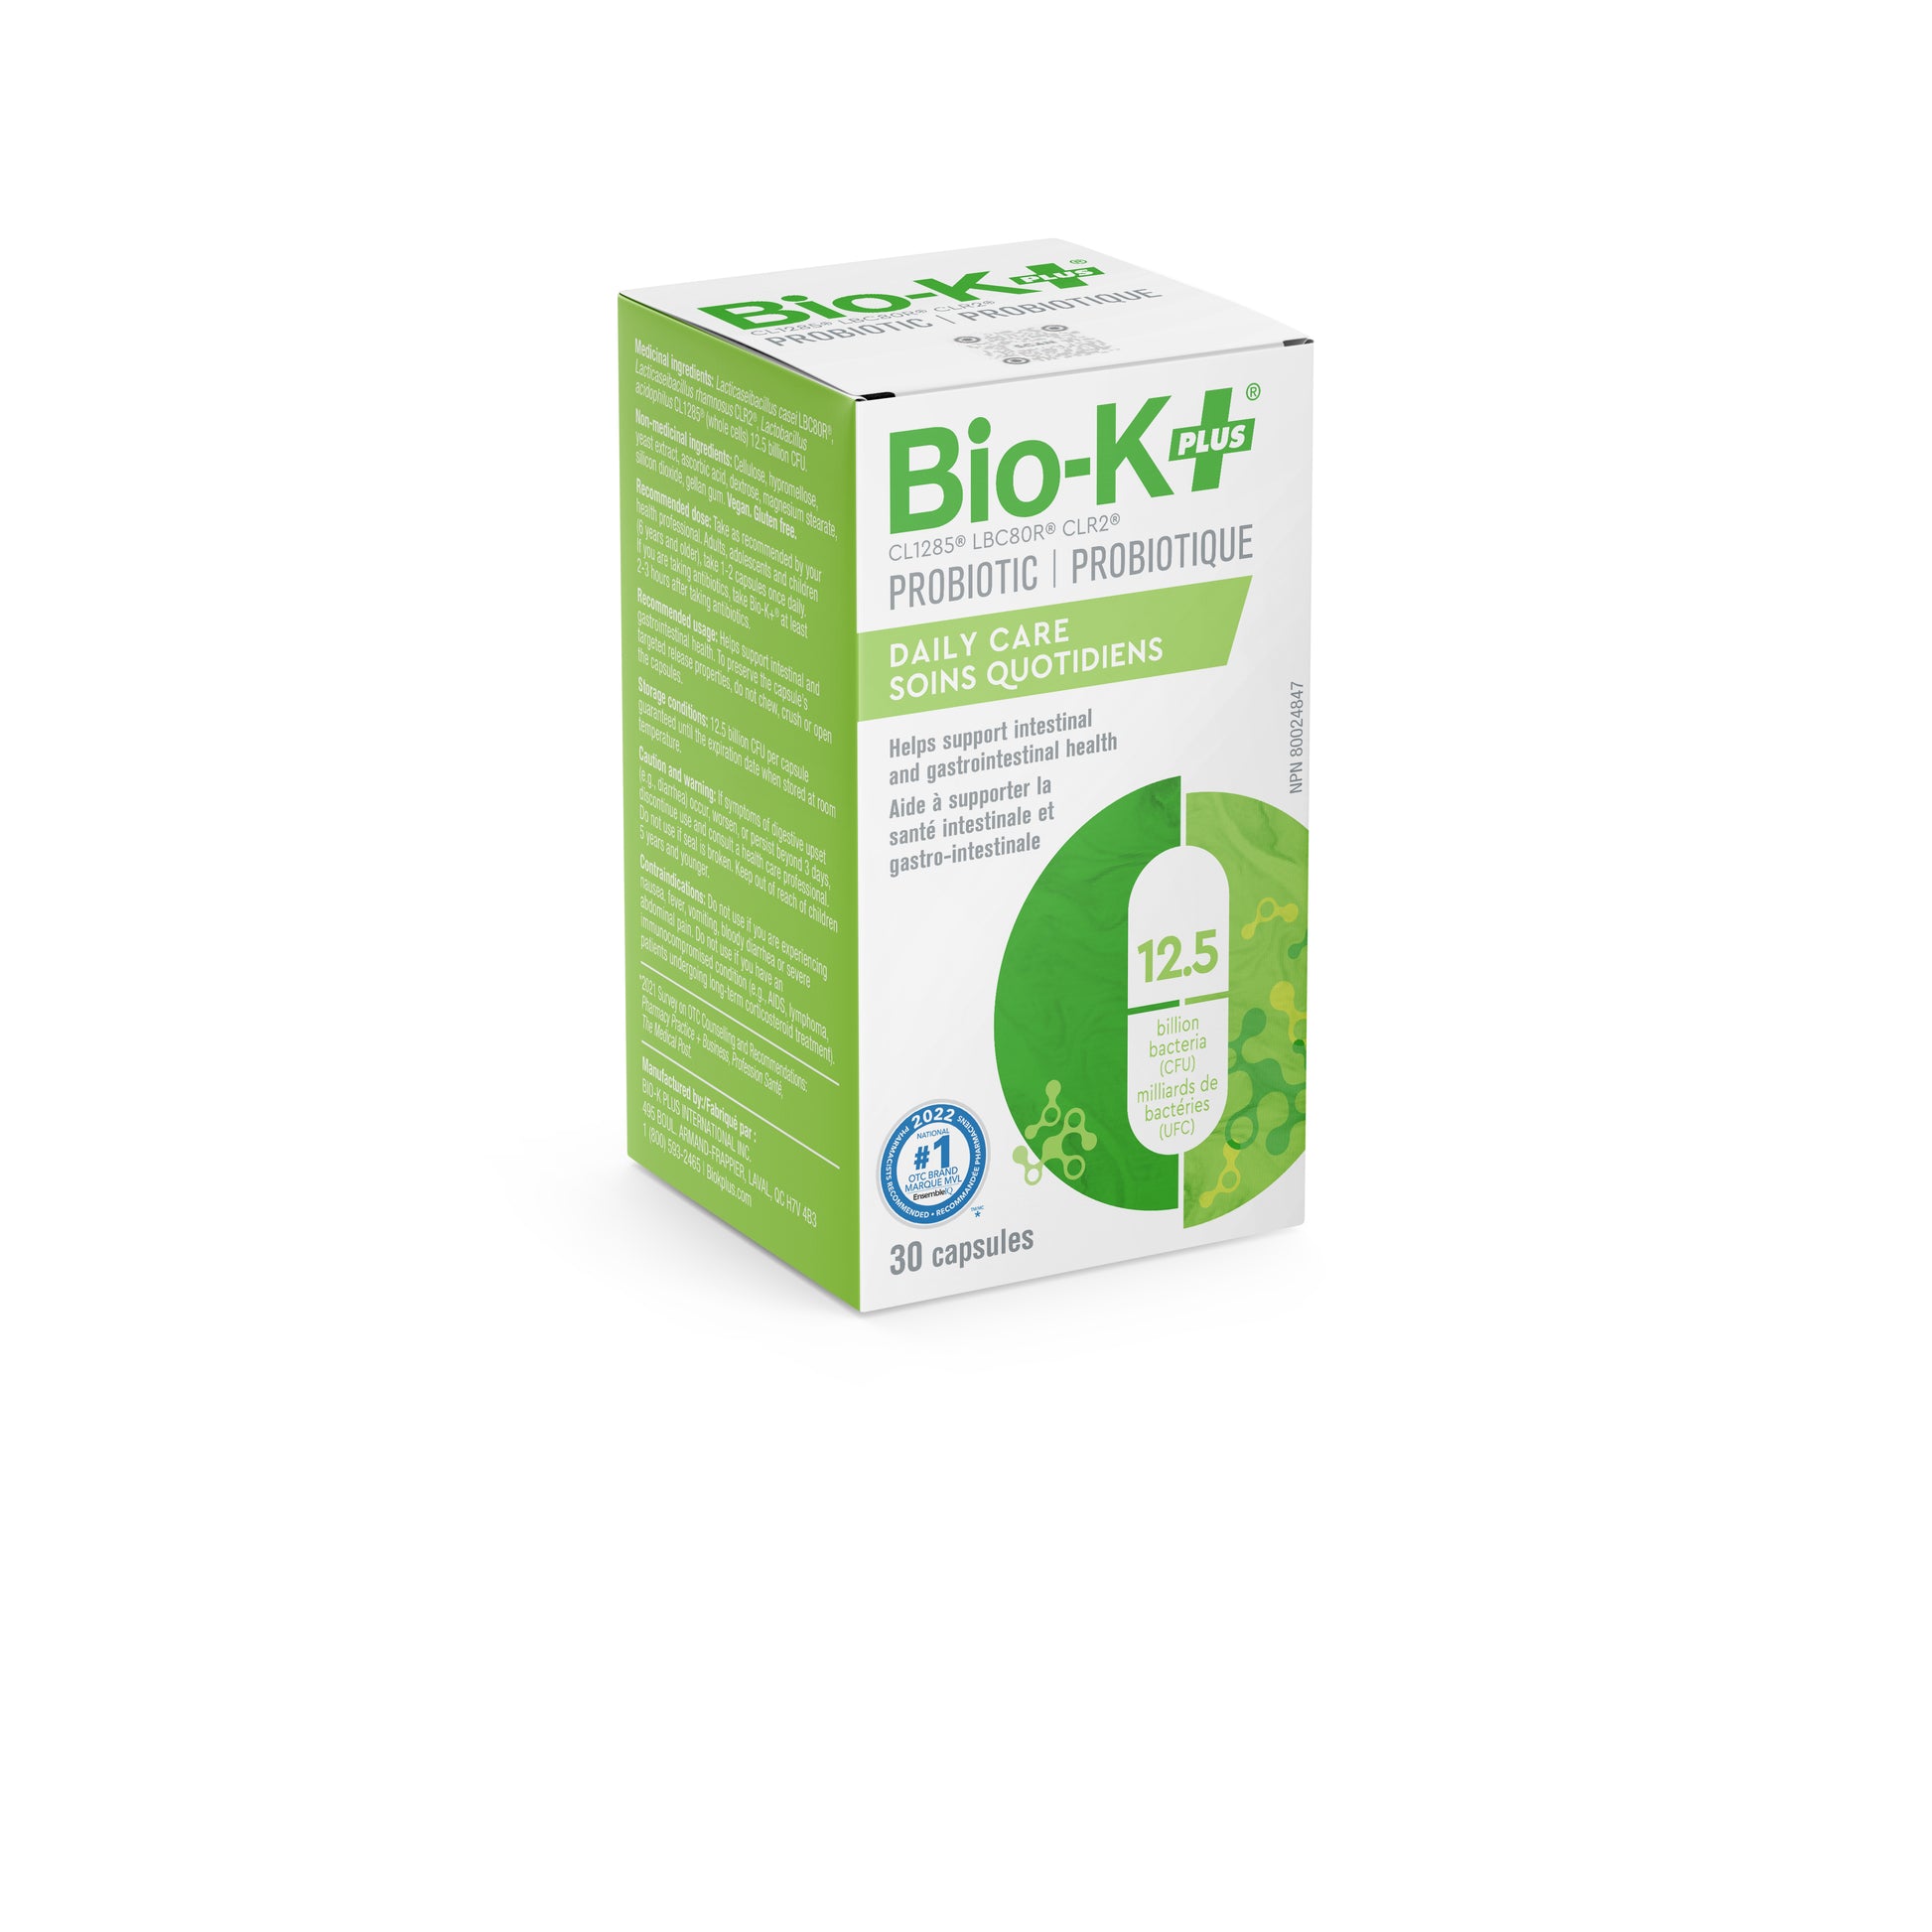 Bio-K+ vegan capsule packaging - 12.5 Billion